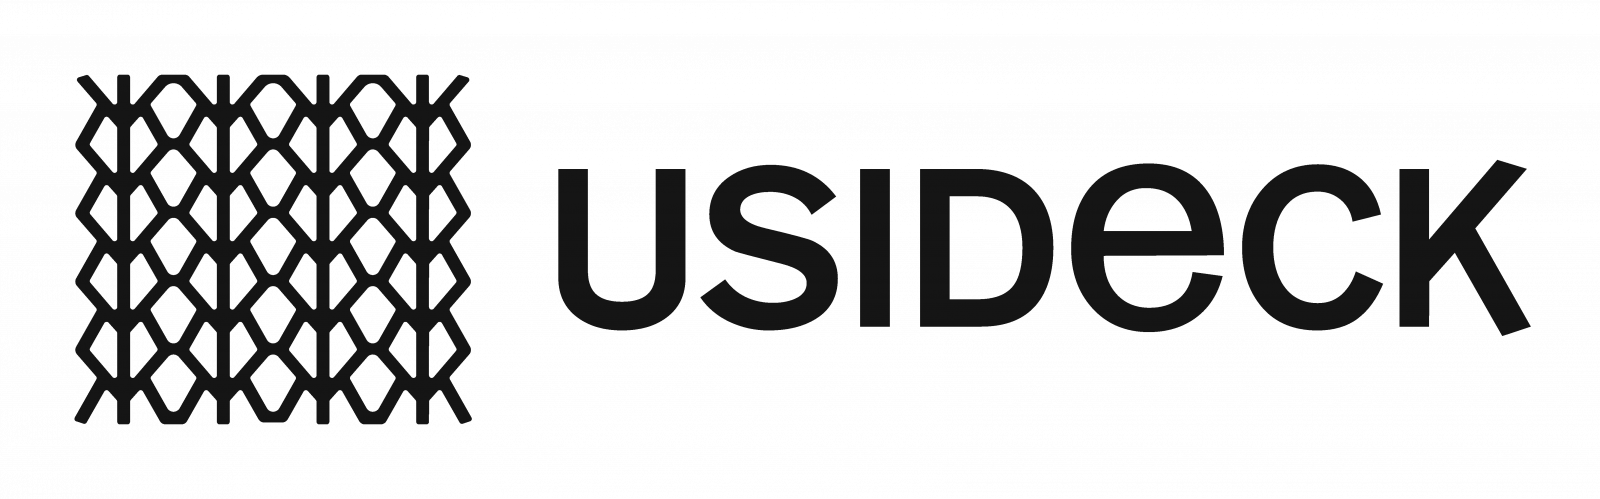 usideck.com